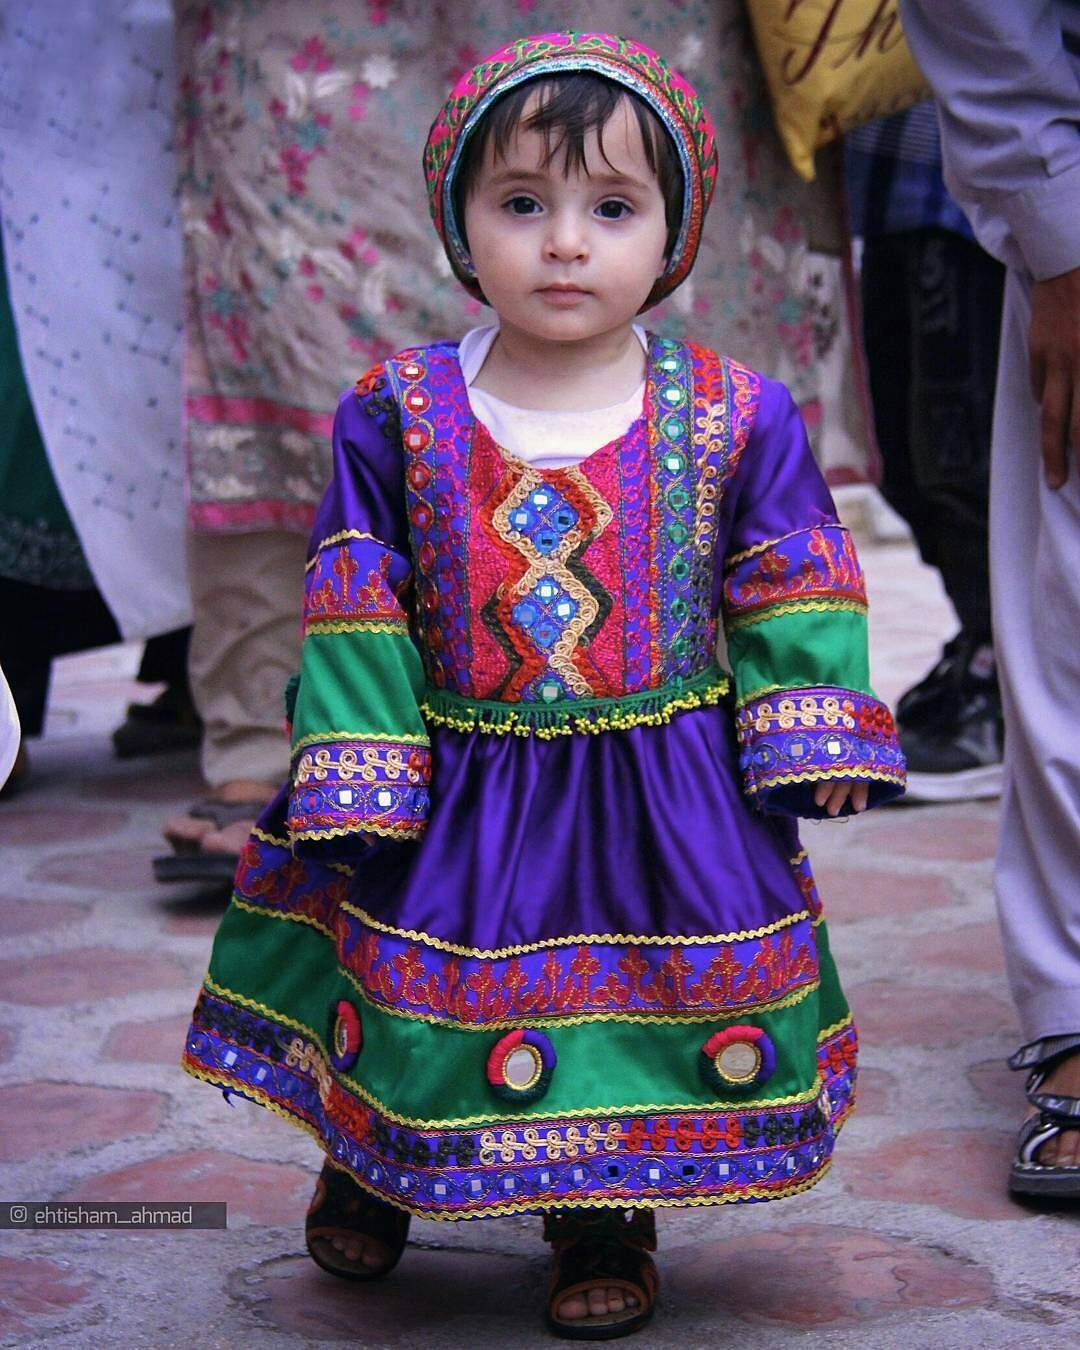 आता, बर्‍याच अफगाण महिलांनी अफगाण समाजाचा खरा पारंपारिक पोशाख दाखवण्यासाठी आणि बुरख्याचा निषेध नोंदवण्यासाठी सोशल मीडियाचा वापर केला आहे.